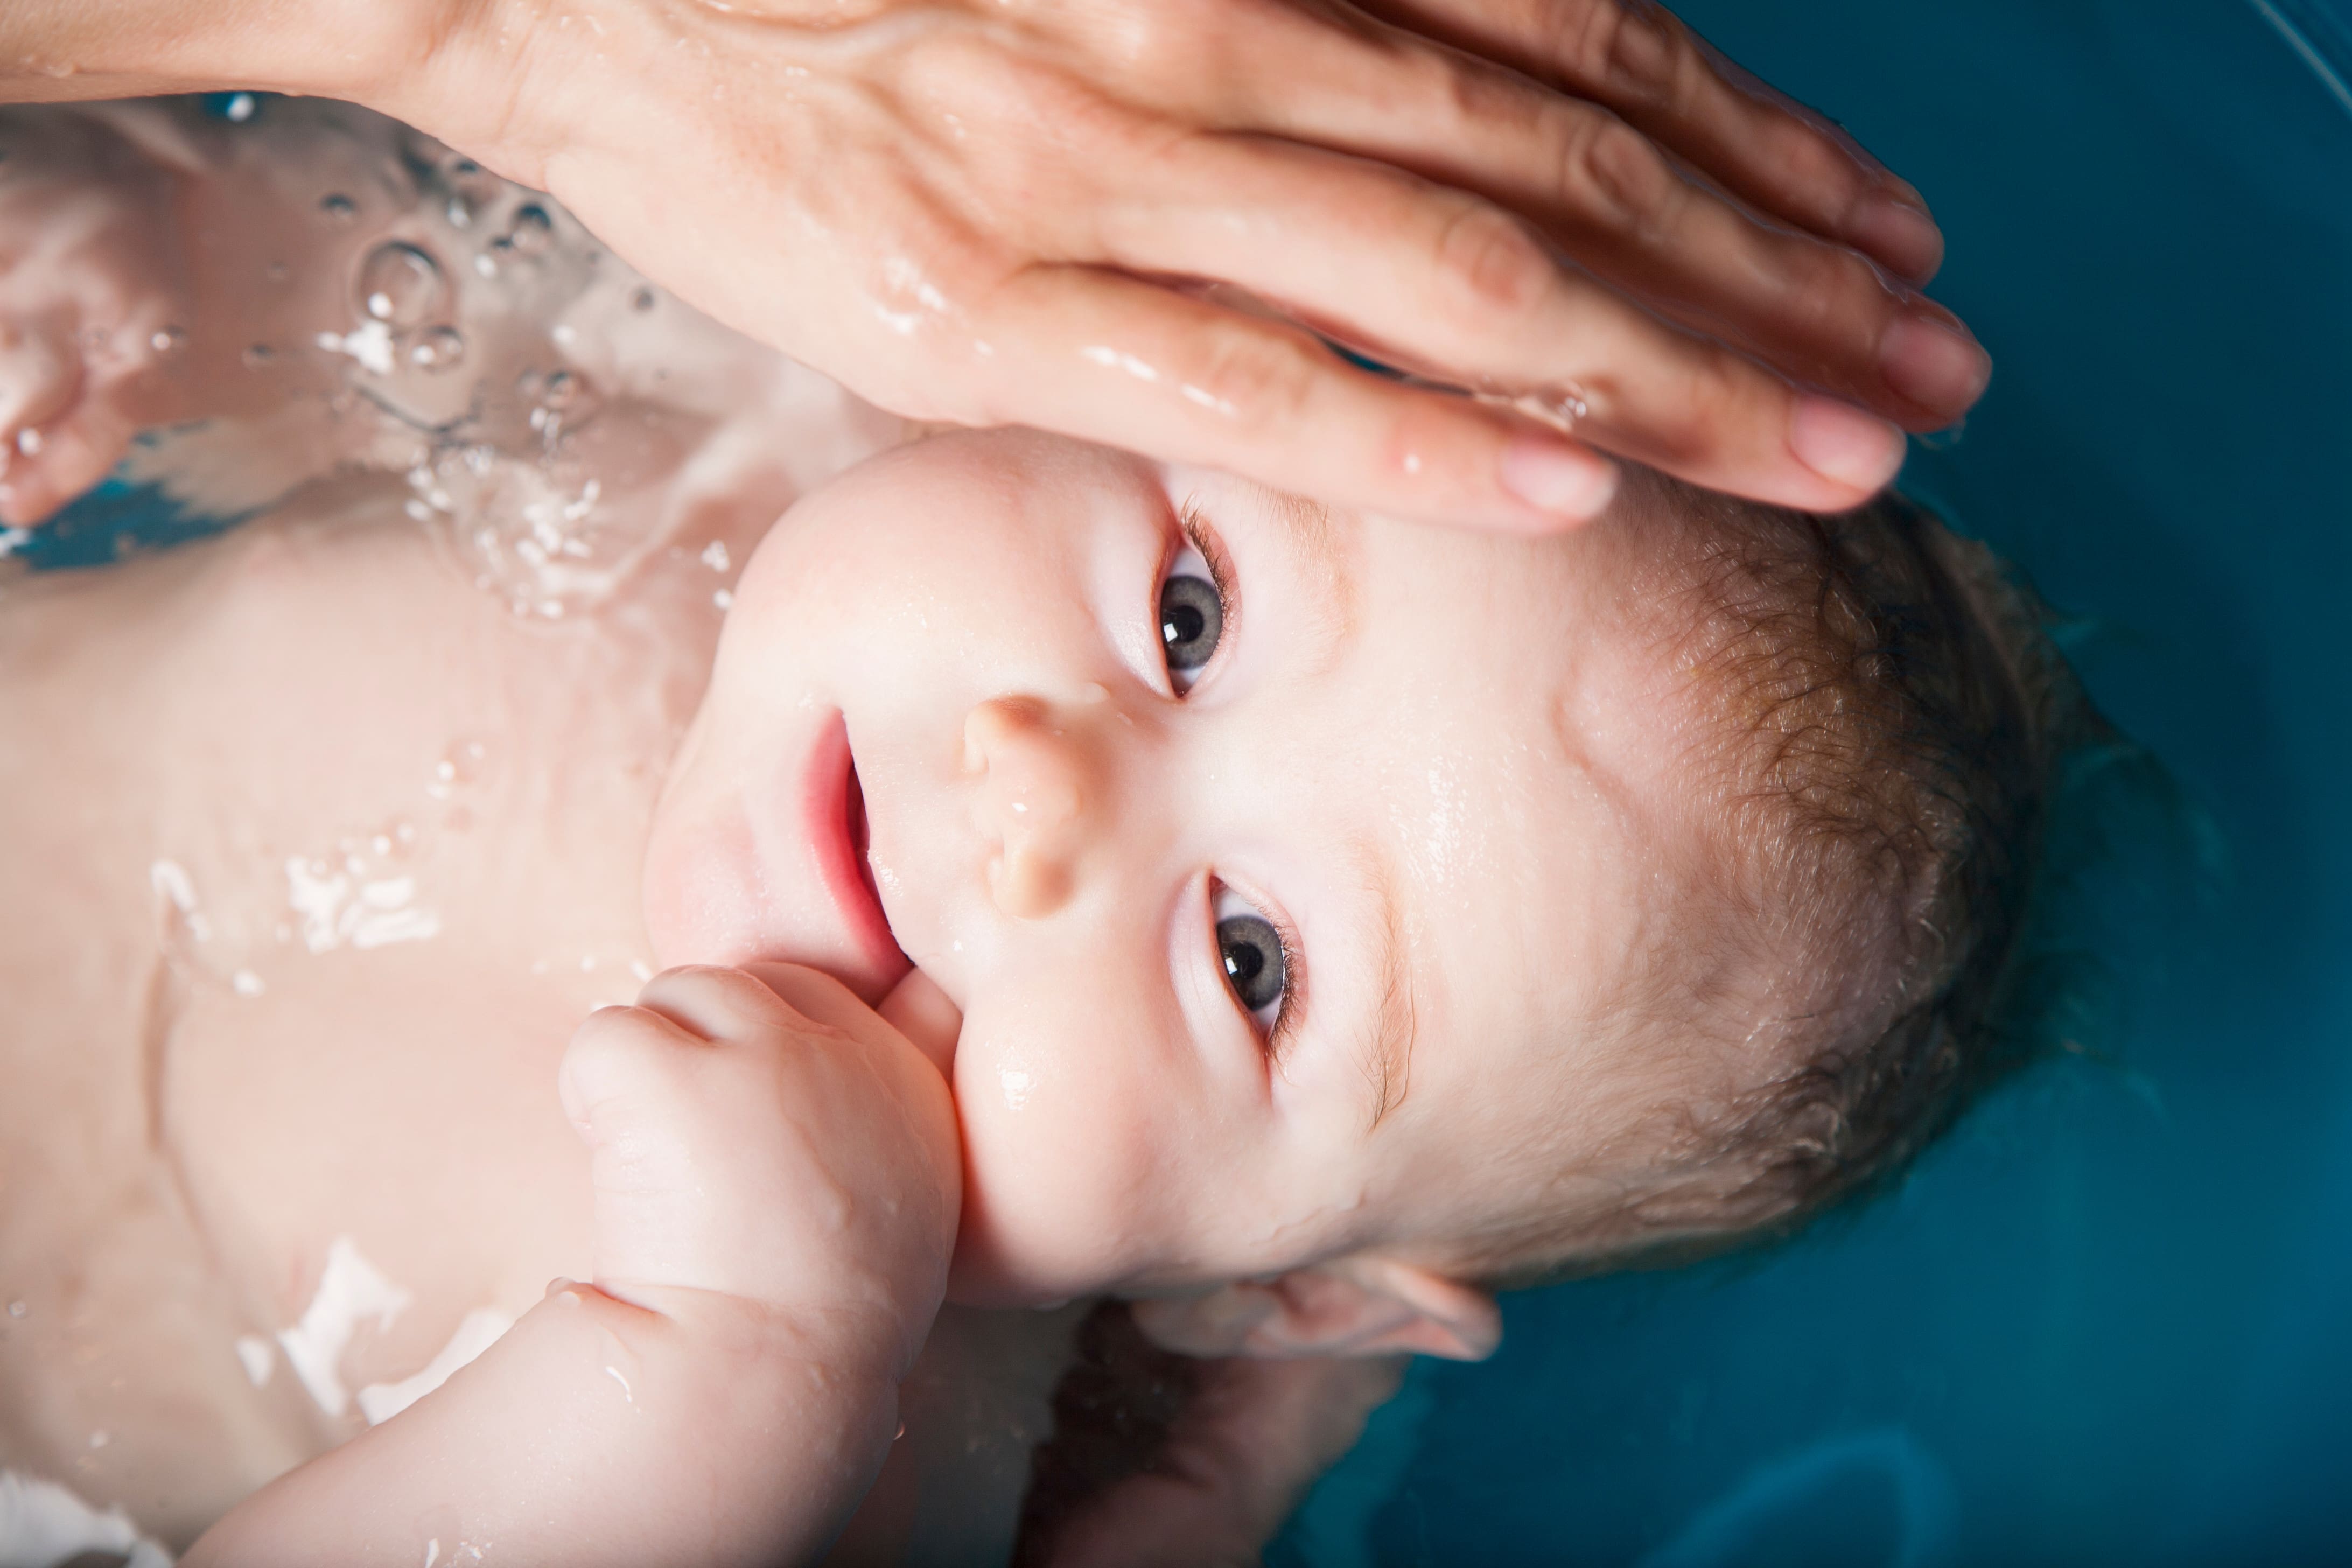 Baby boy being given a bath by his mother in a blue plastic bath bathtub.